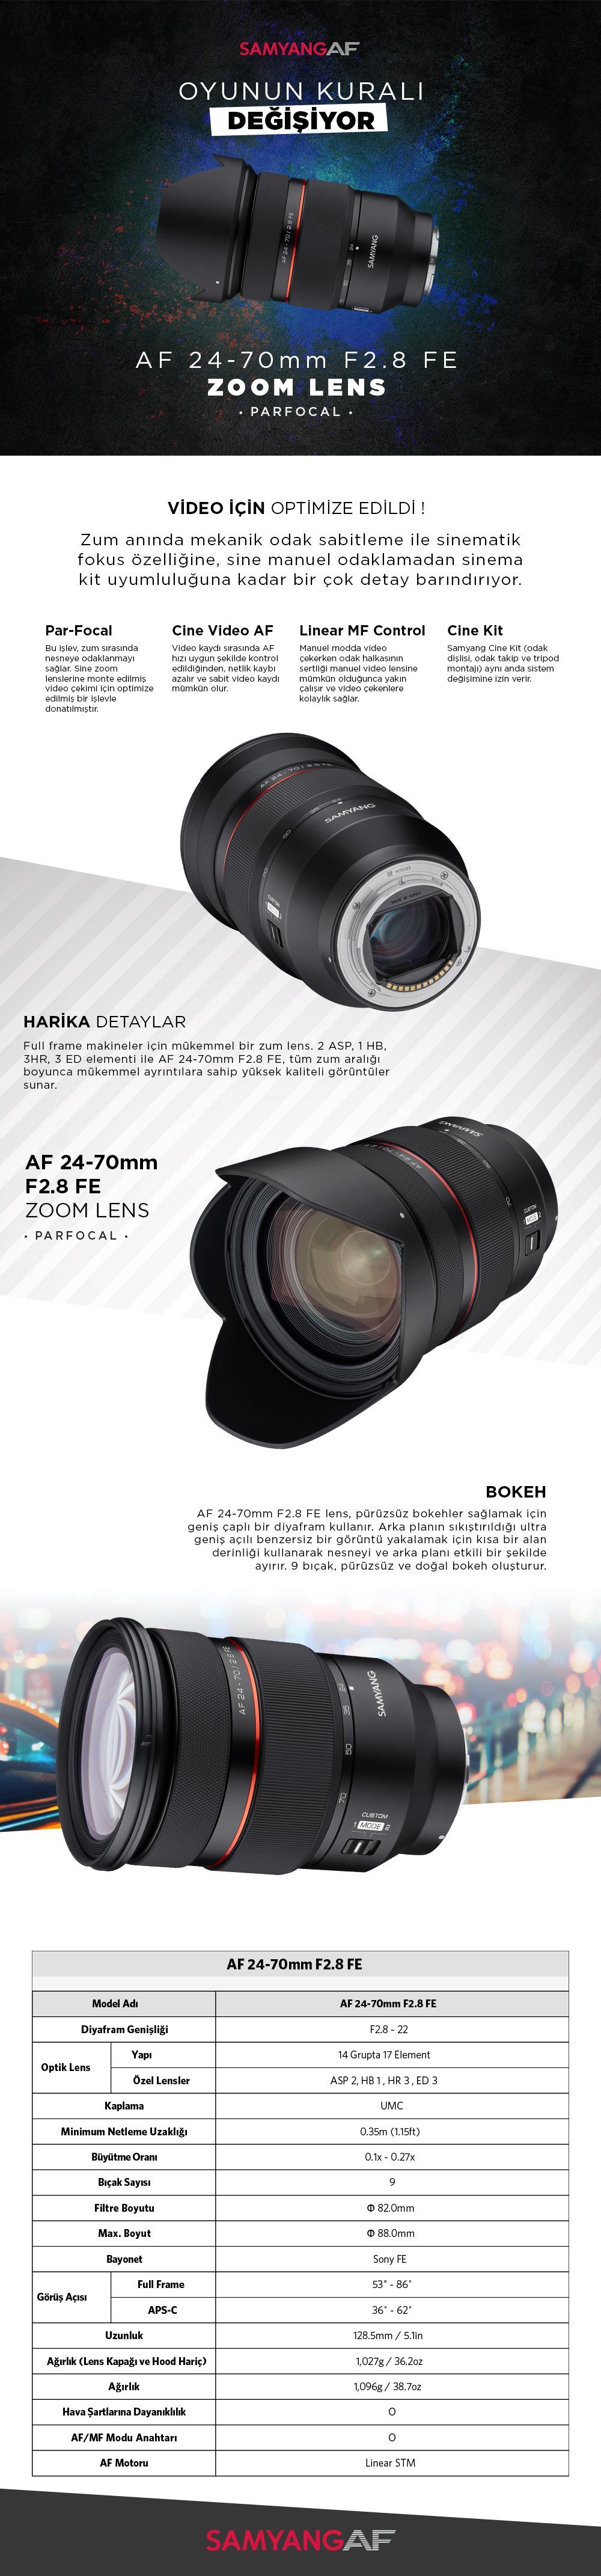 samyang af 24-70mm lens fiyatı